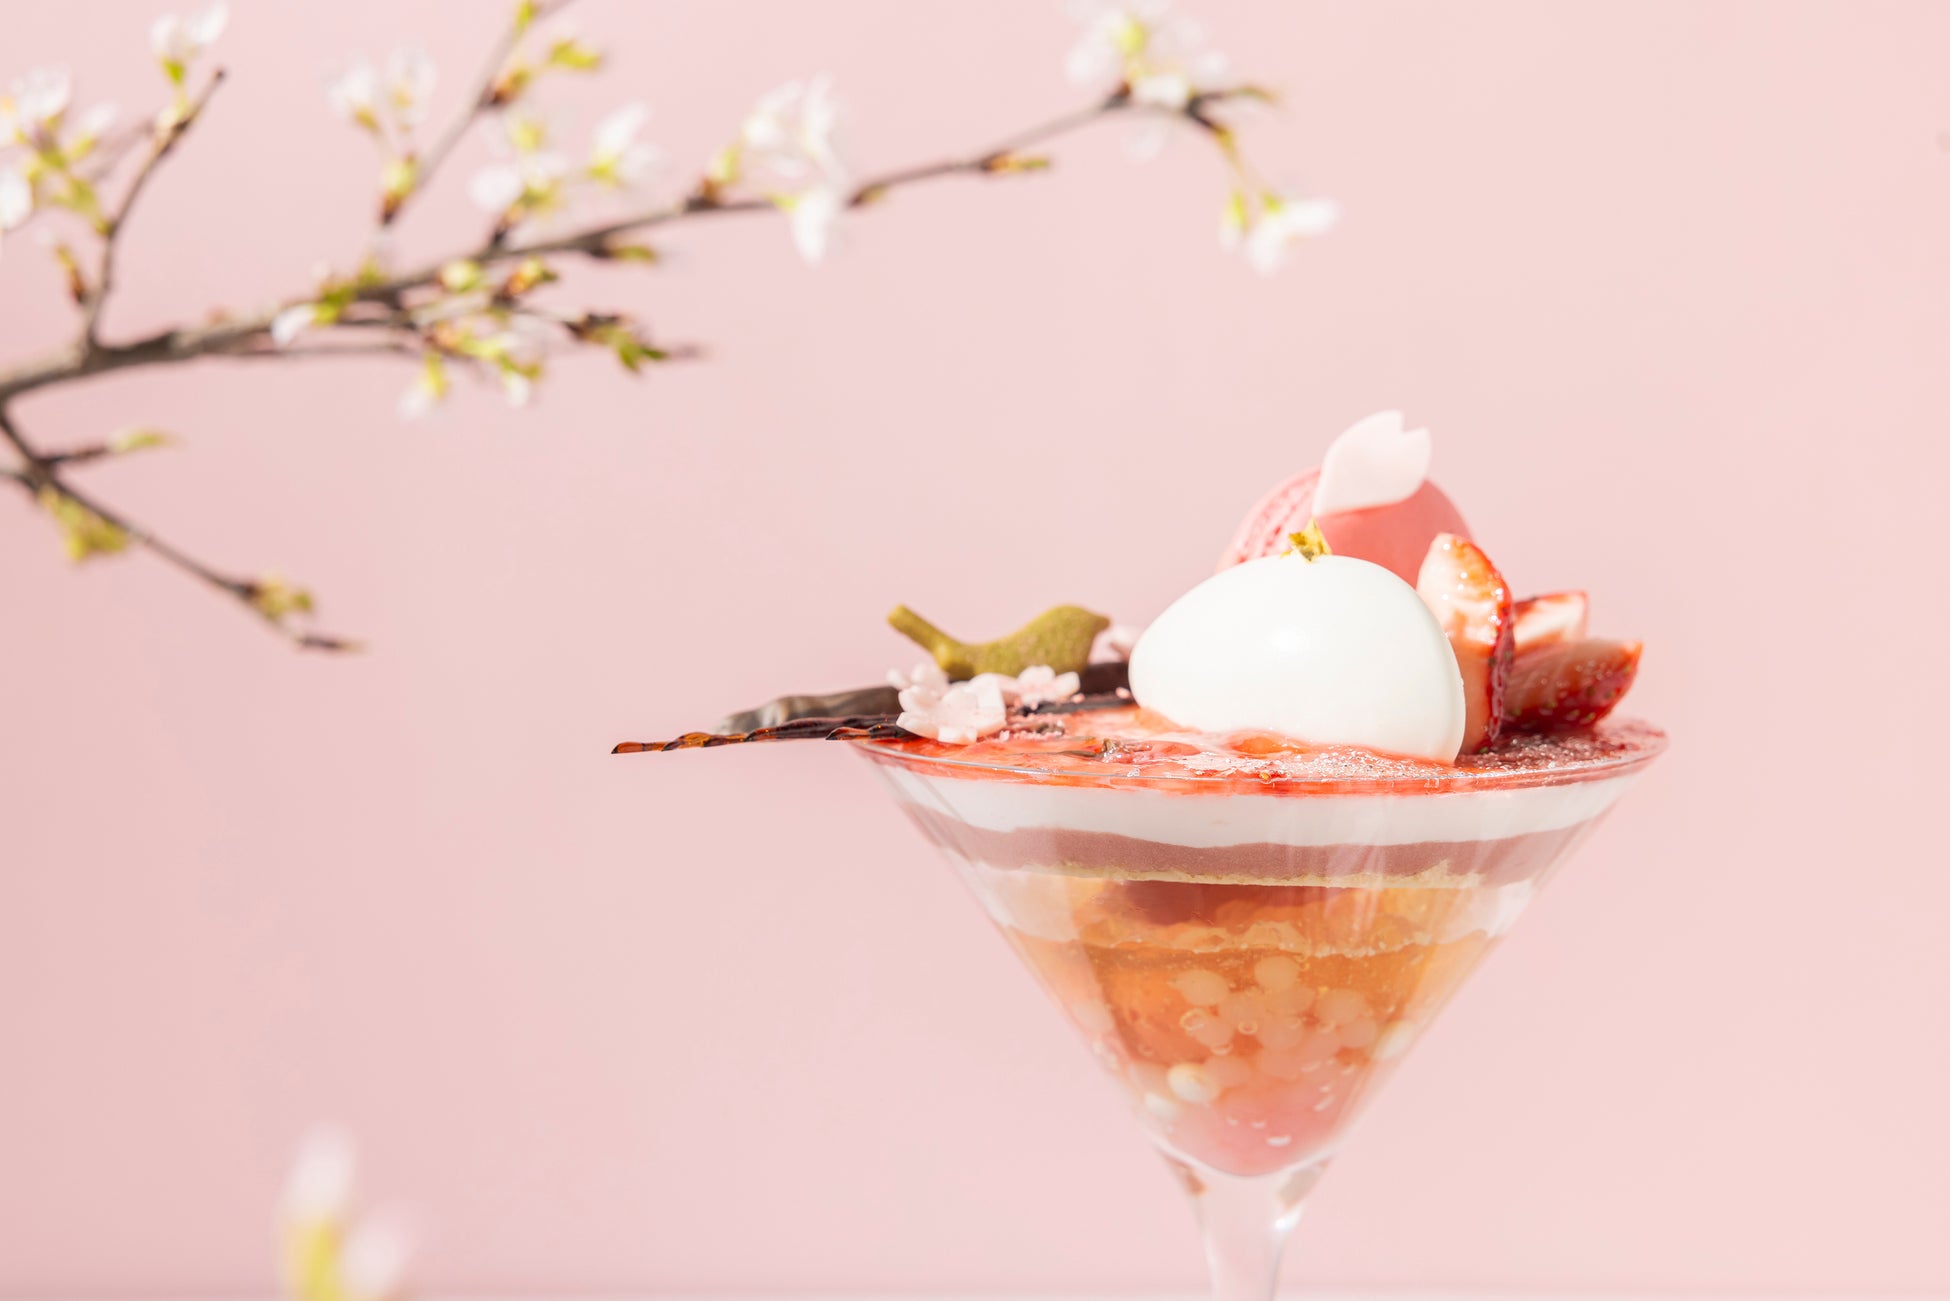 ザ・プリンスギャラリー 東京紀尾井町 桜の絨毯を描いた春の訪れを祝うパフェ「SAKURA Bloom Parfait」を販売